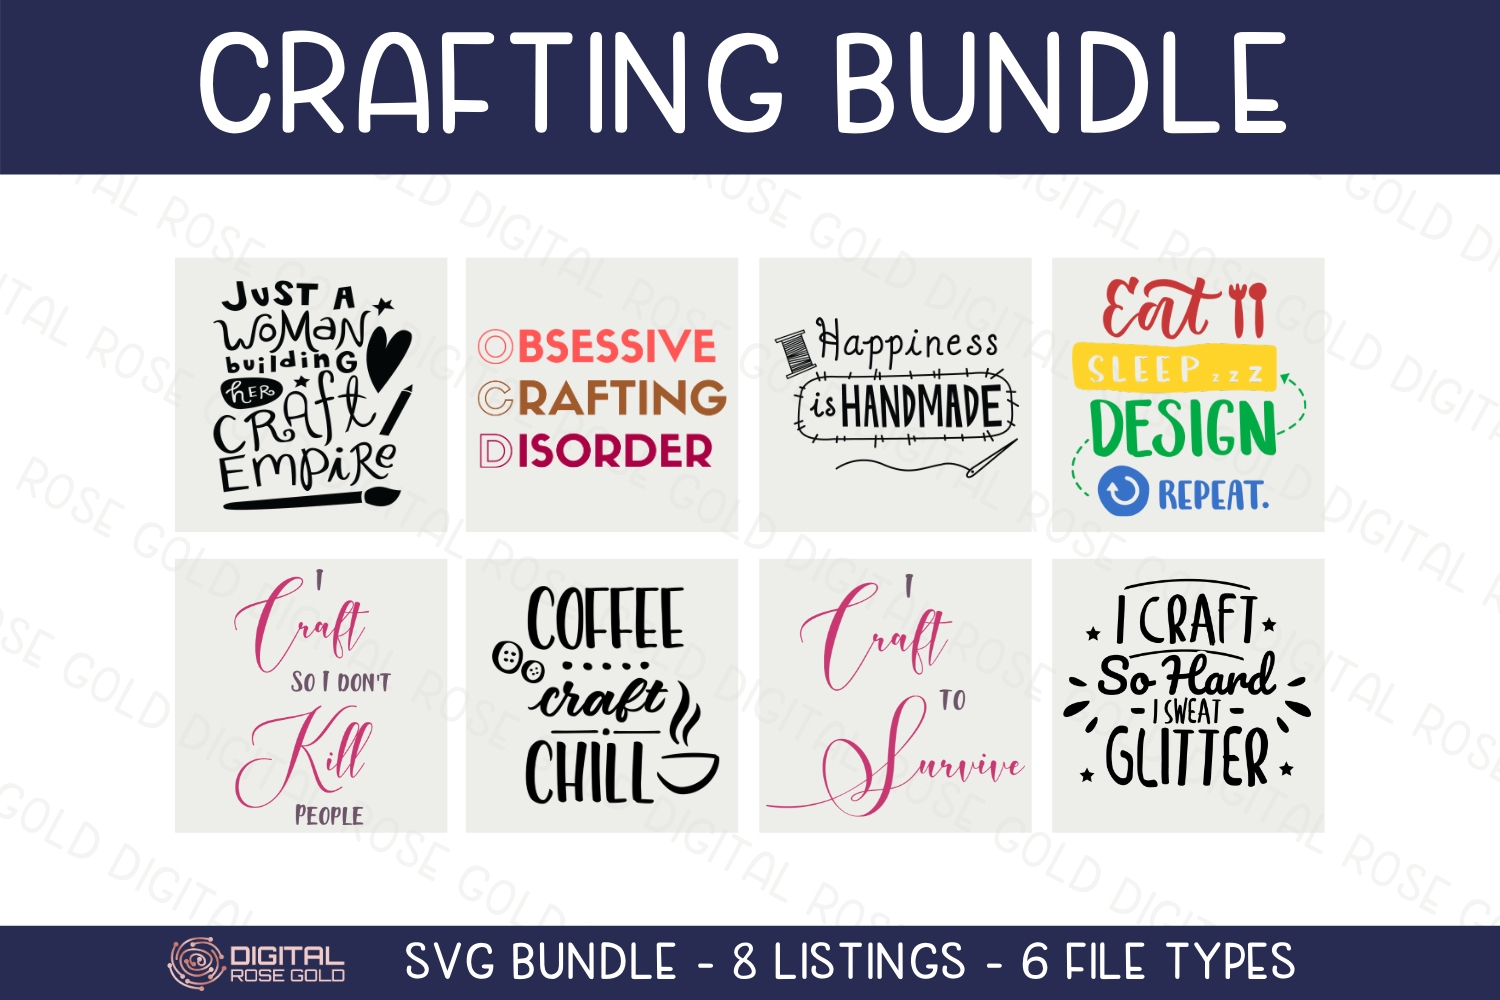 Download Crafting Bundle - SVG BUNDLE - Craft Room Decor, Cricut SVG